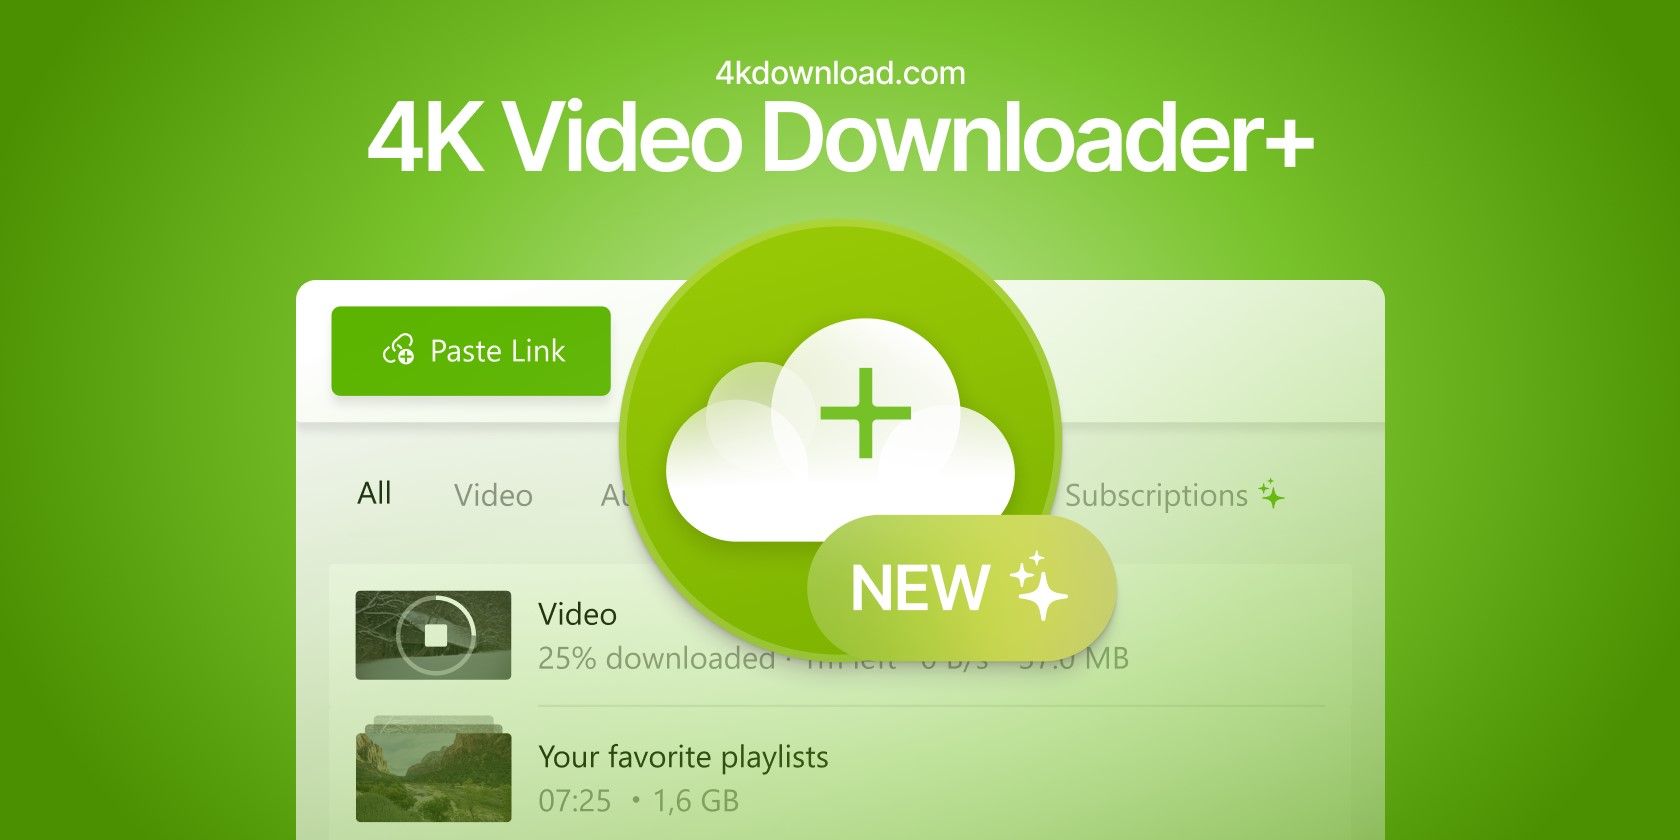 4k video downloader exe file